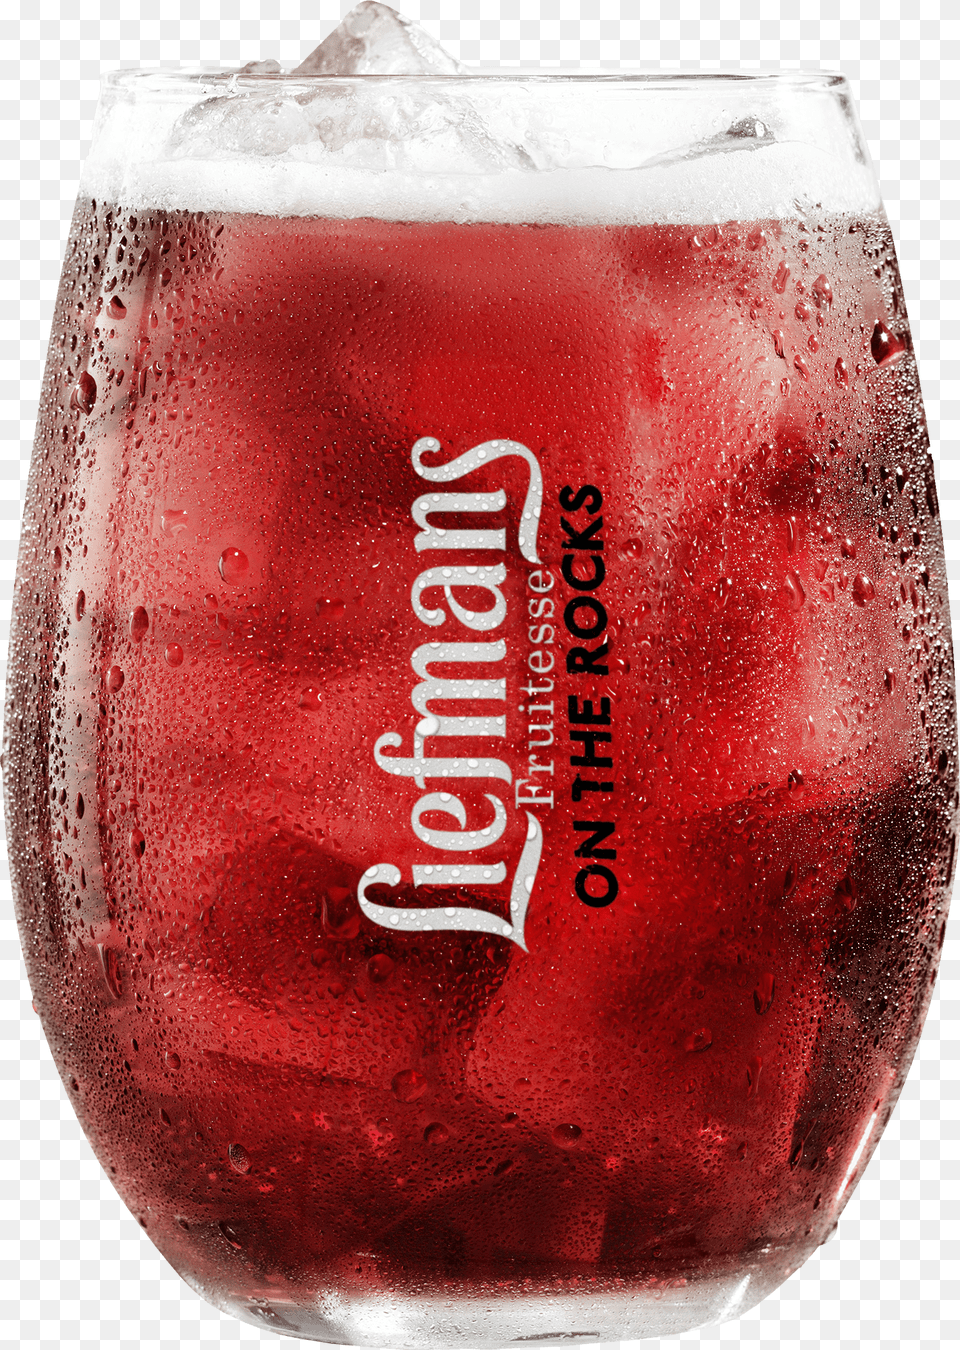 Liefmans On The Rocks Glass, Alcohol, Beer, Beverage, Beer Glass Free Transparent Png